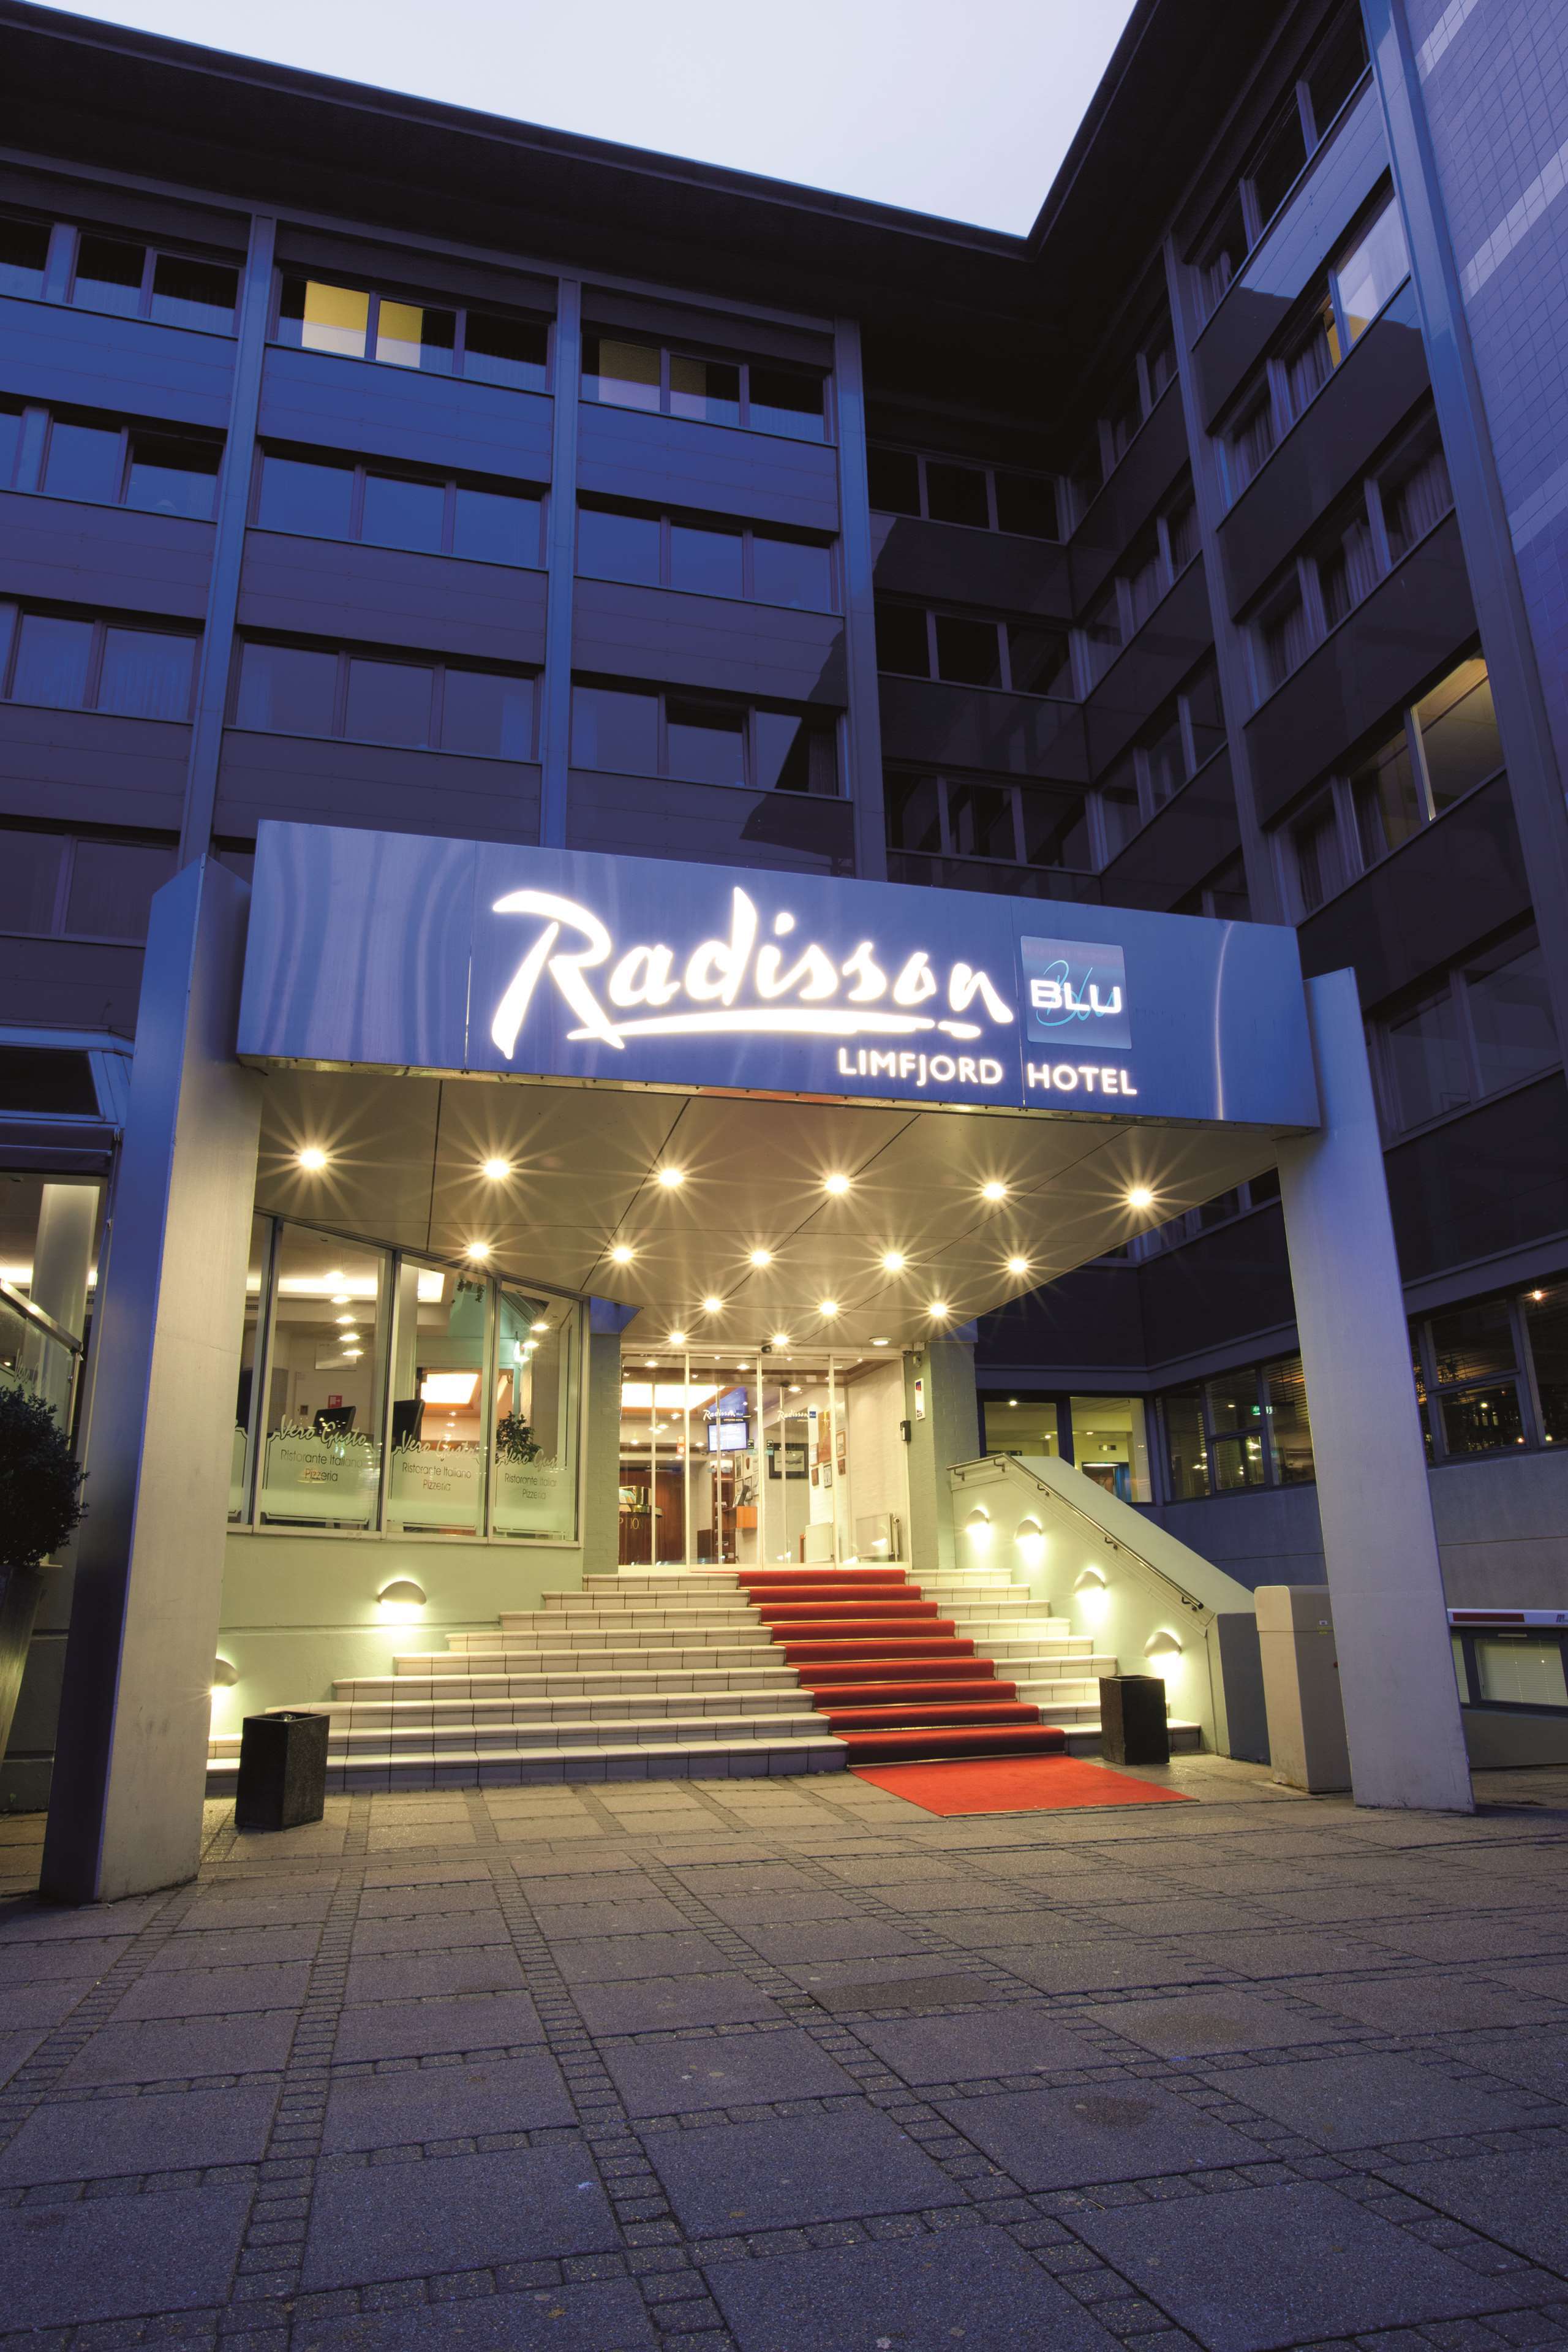 Radisson Blu Limfjord Hotel, Aalborg Radisson Blu Limfjord Hotel, Aalborg, Aalborg - 41